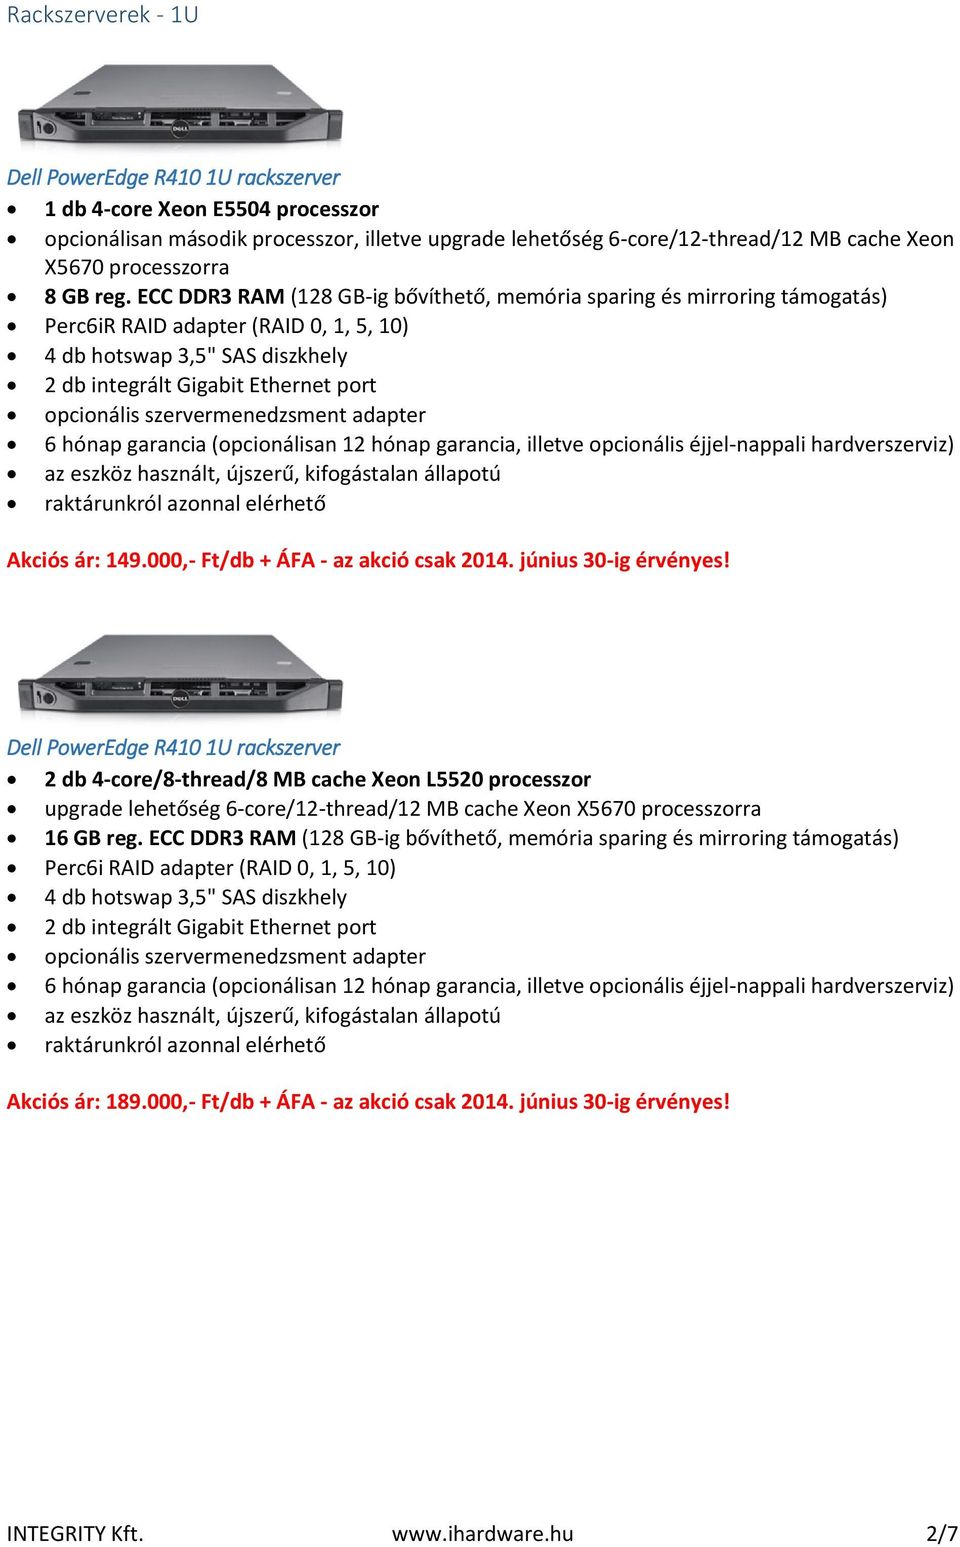 ECC DDR3 RAM (128 GB-ig bővíthető, memória sparing és mirroring támogatás) Perc6iR RAID adapter (RAID 0, 1, 5, 10) 4 db hotswap 3,5" SAS diszkhely Akciós ár: 149.